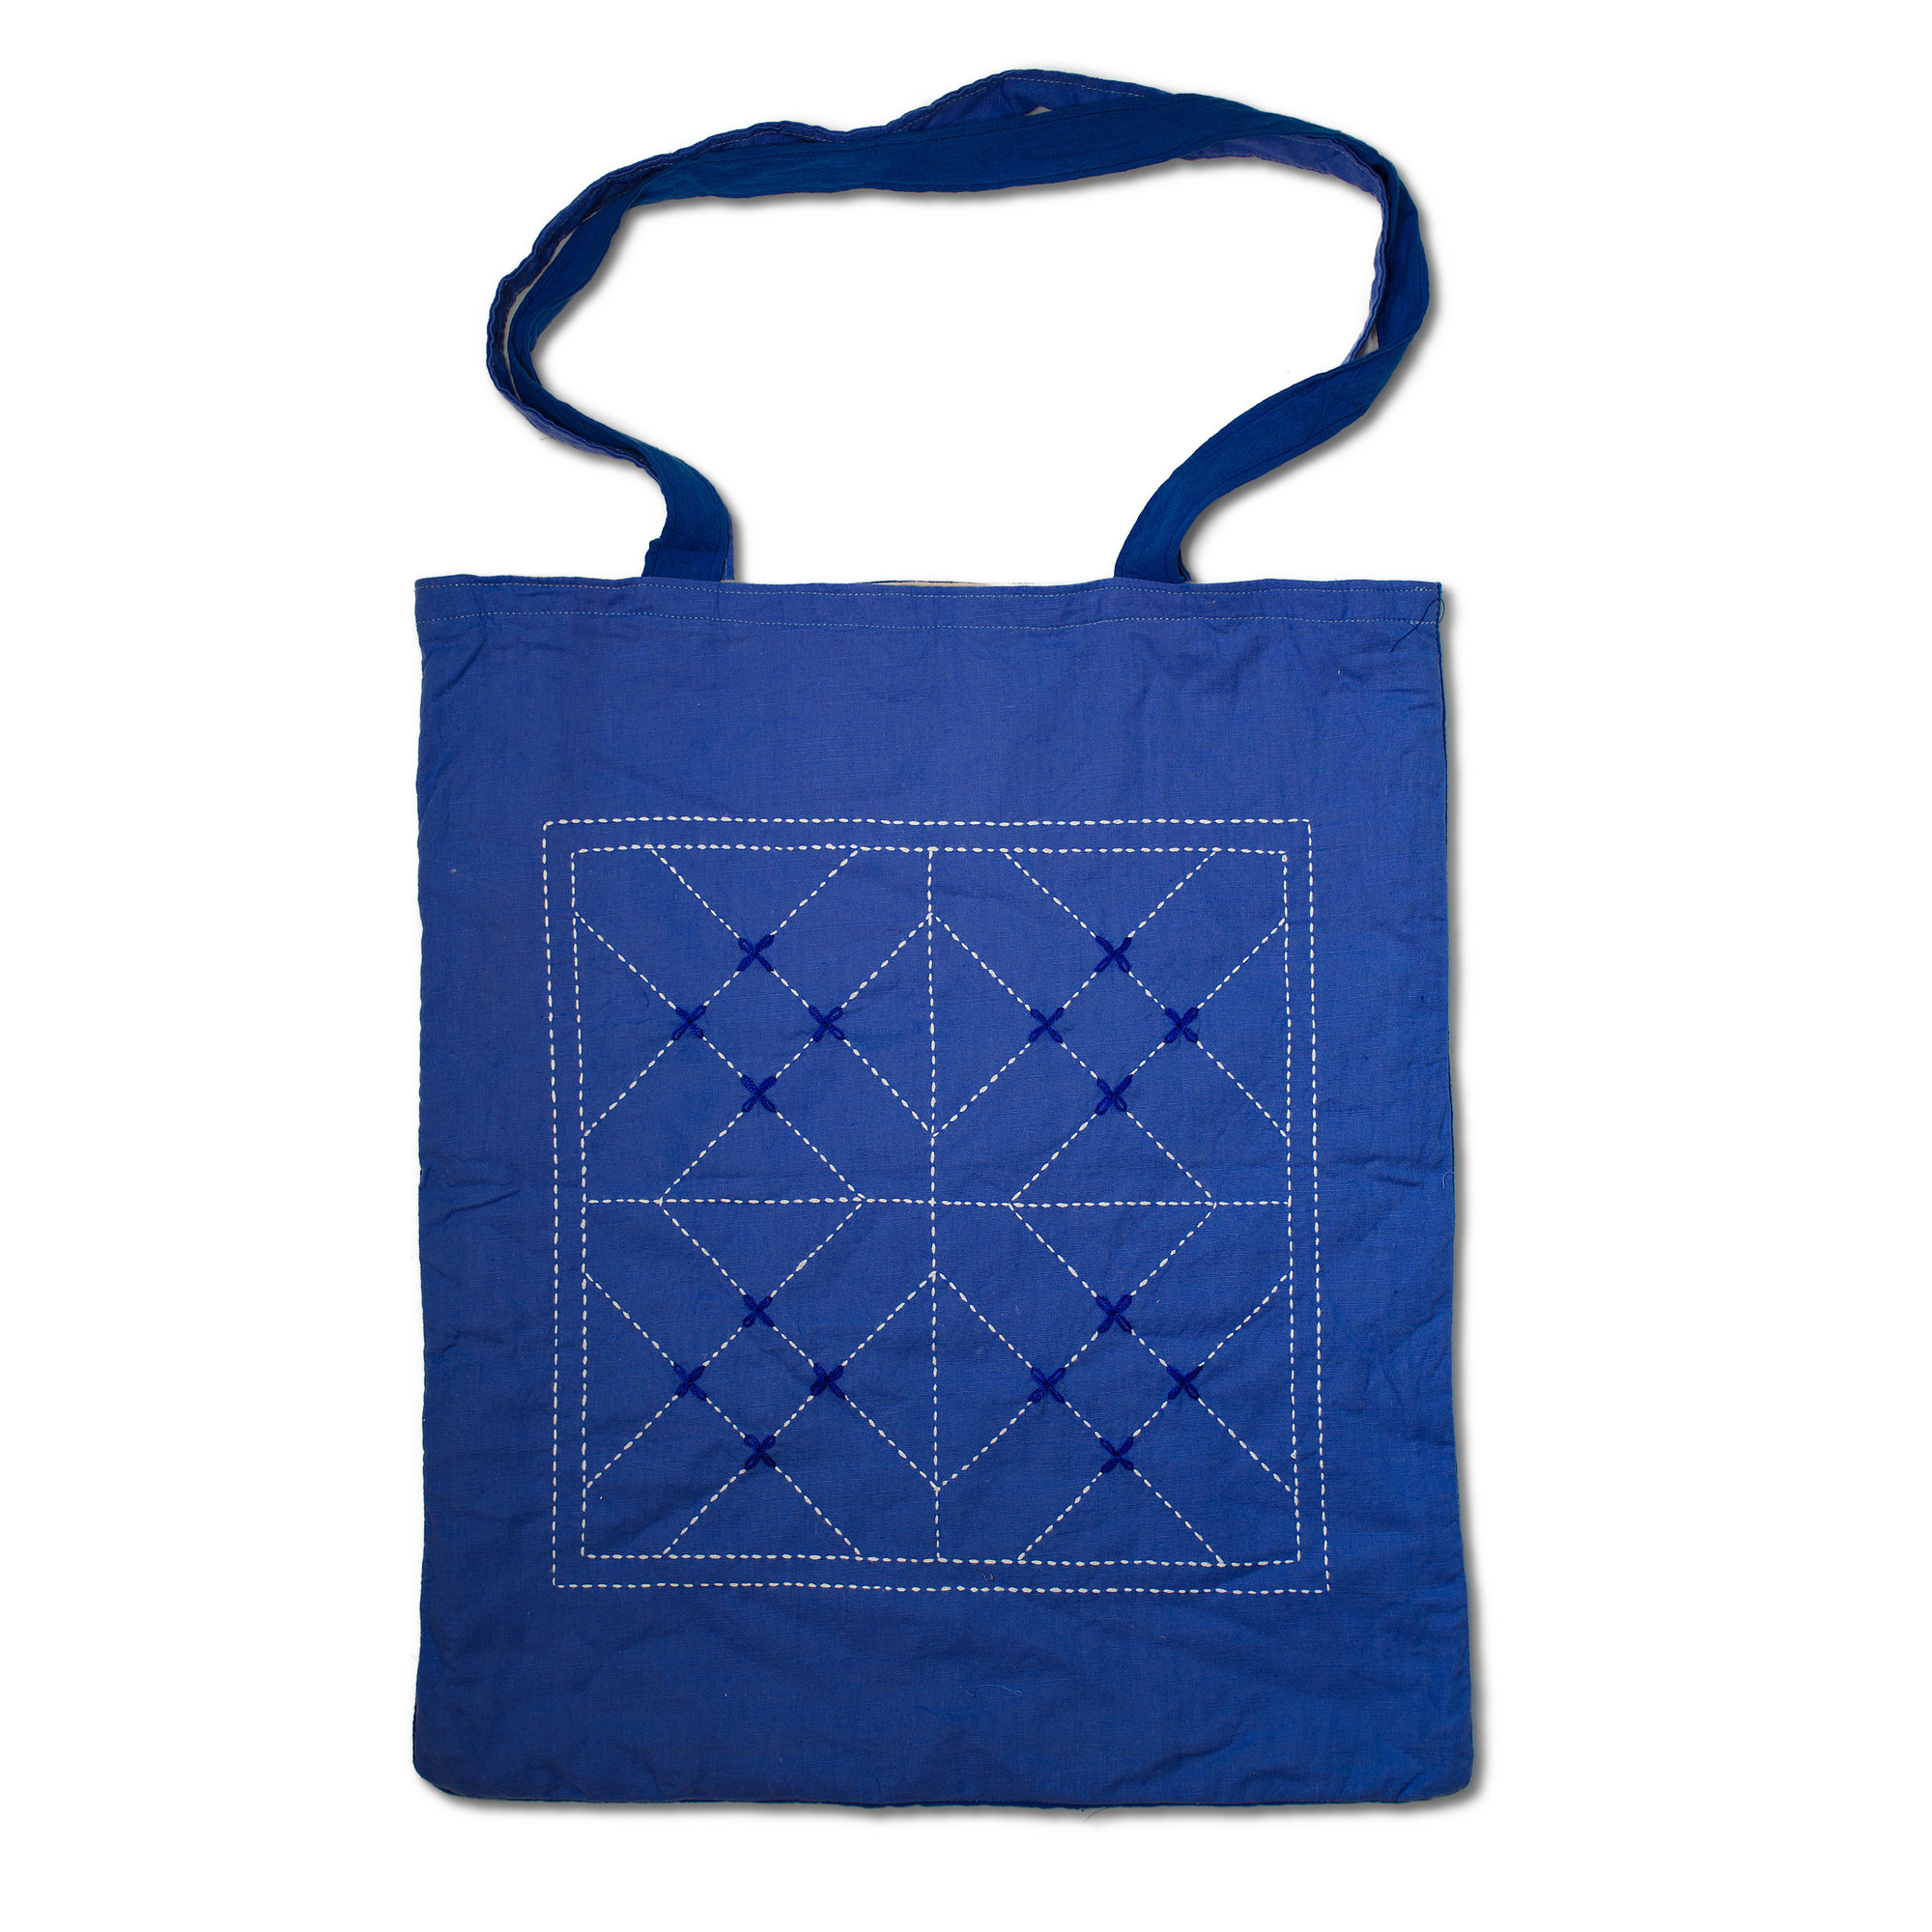 Tote Bag - Kurigram (geometric) Design In Suraiya (dark Blue) And Amanullah (light Blue)